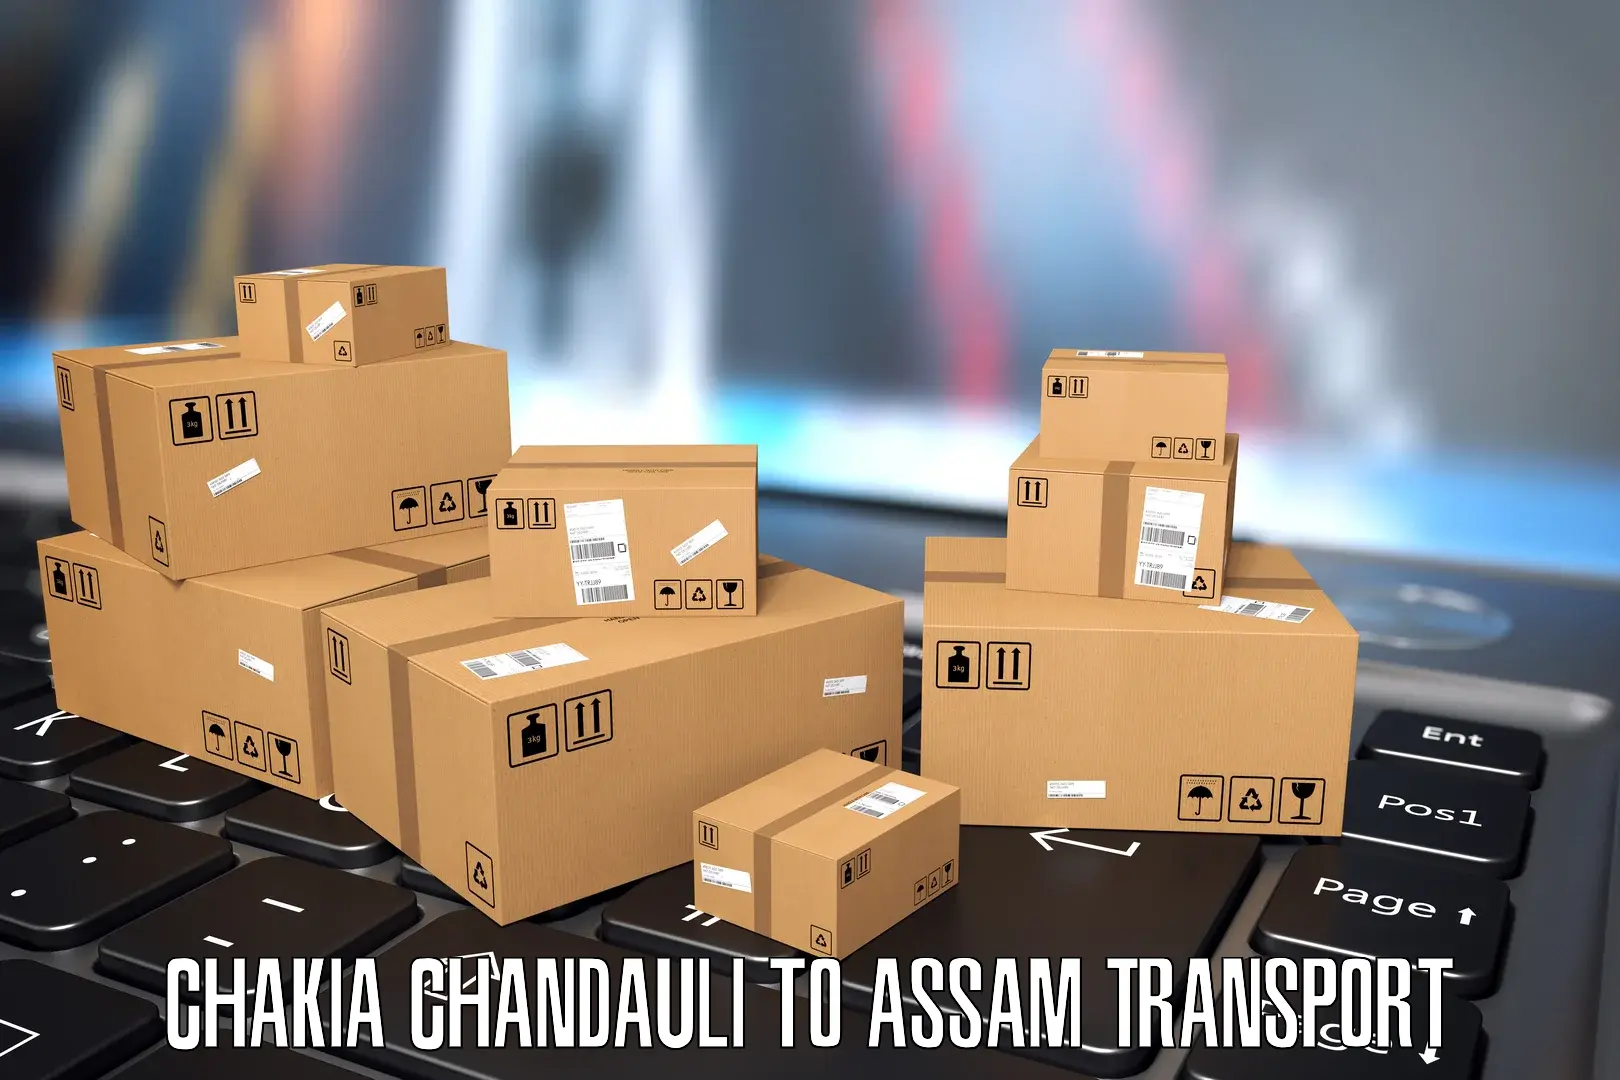 Pick up transport service Chakia Chandauli to Assam